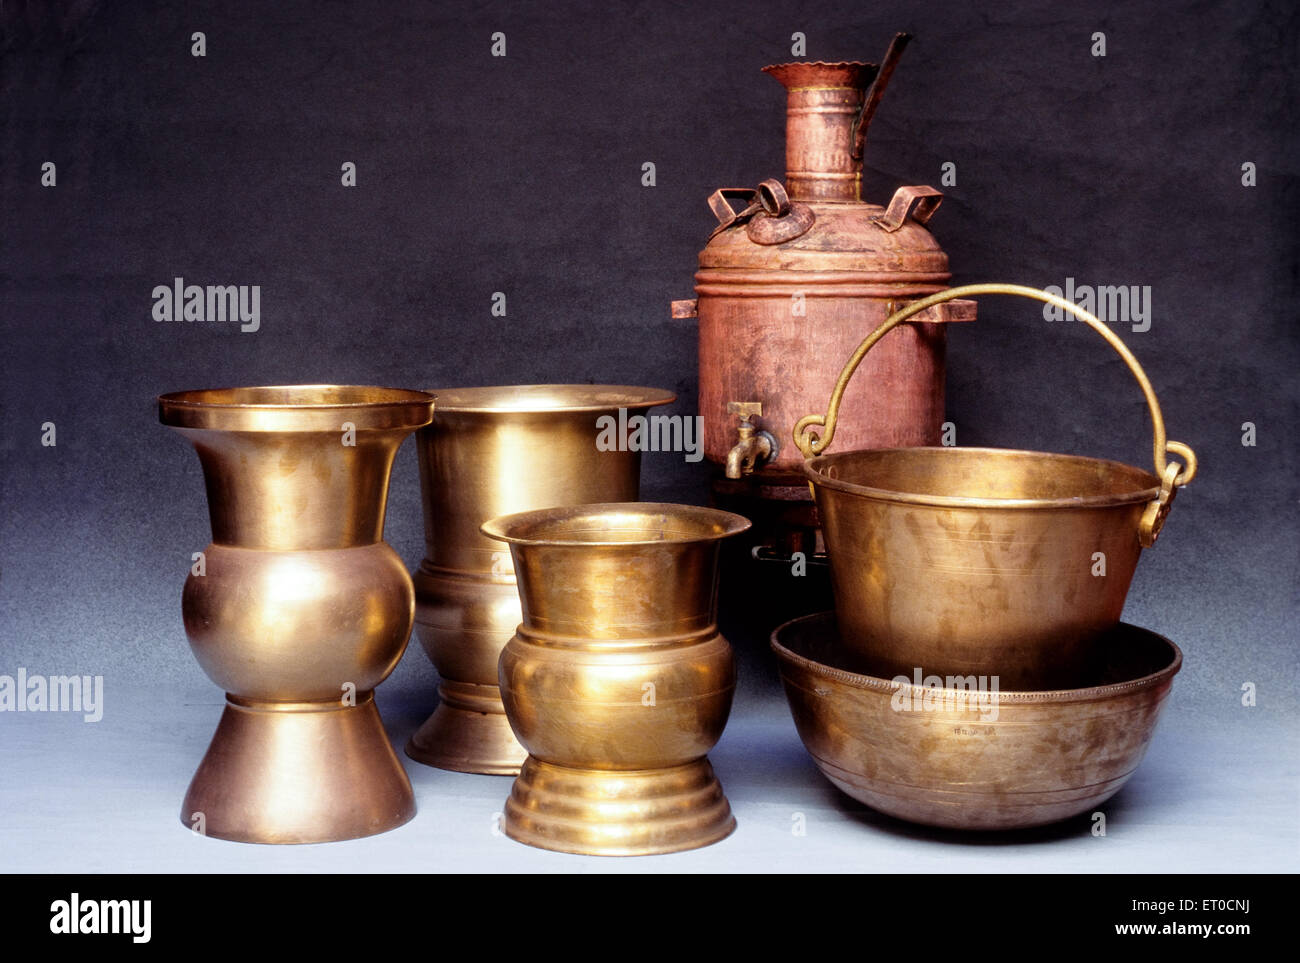 Les crachoirs traditionnel seau et le cuivre chauffe-eau dans Nattukottai chettiar ou nagarathar Chettinad ; ; ; Tamil Nadu Inde Banque D'Images